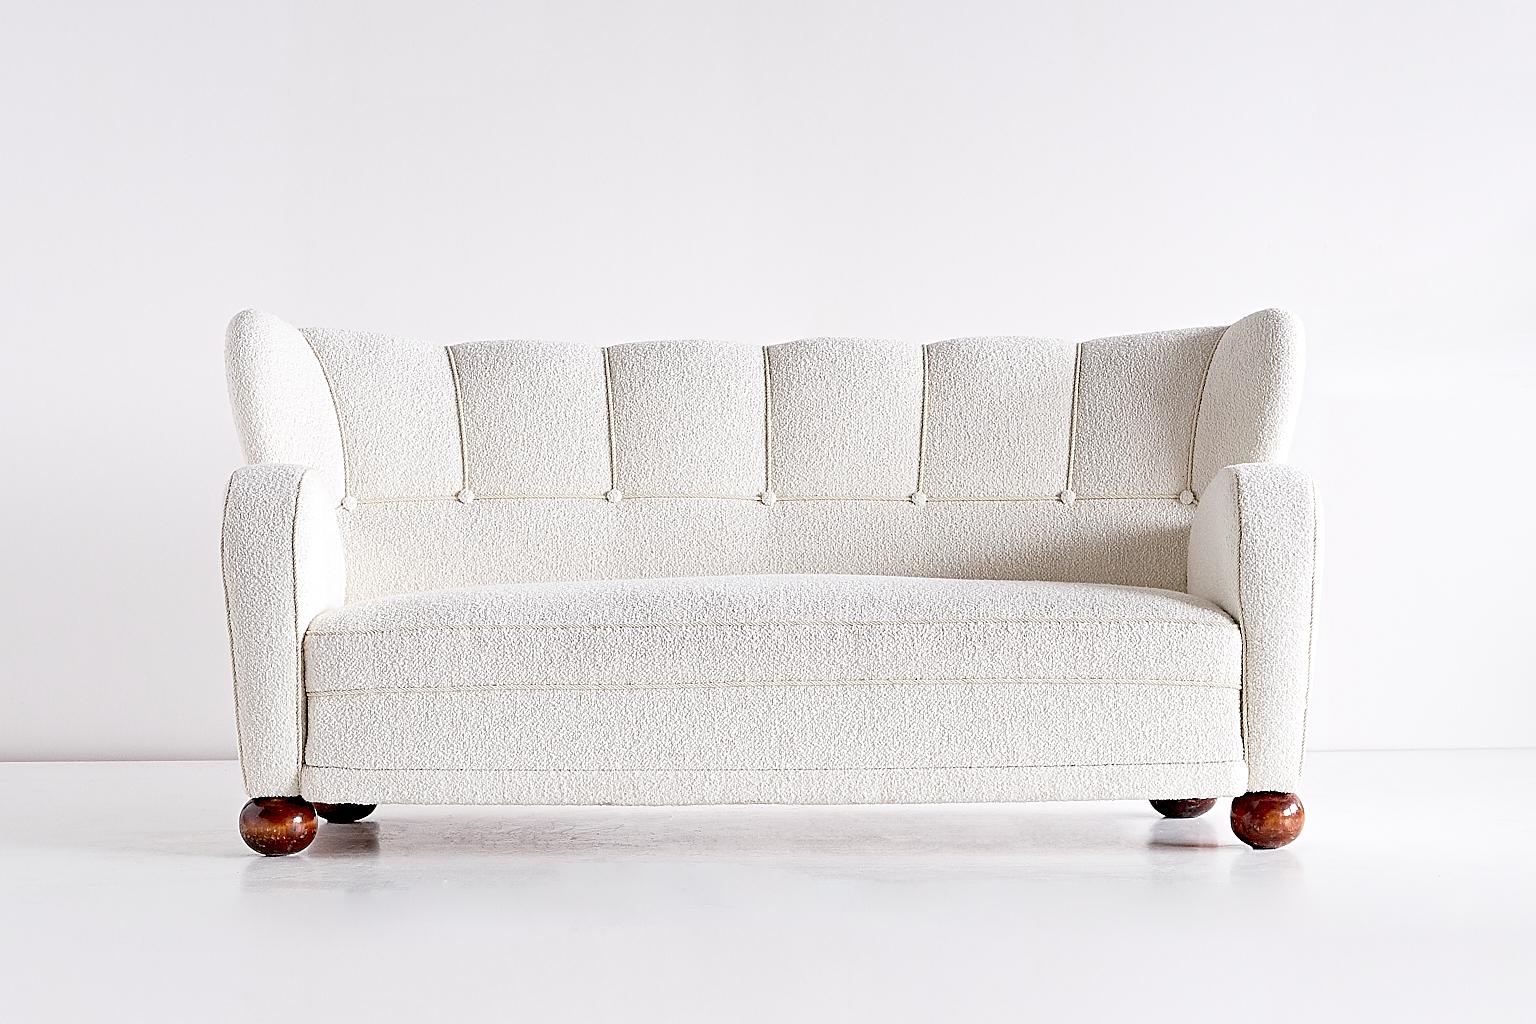 Ce rare canapé a été conçu par Märta Blomstedt et produit en Finlande dans les années 1940. Le canapé a été entièrement remis en état et nouvellement tapissé d'un tissu bouclé blanc. 
L'une des forces motrices du mouvement fonctionnaliste